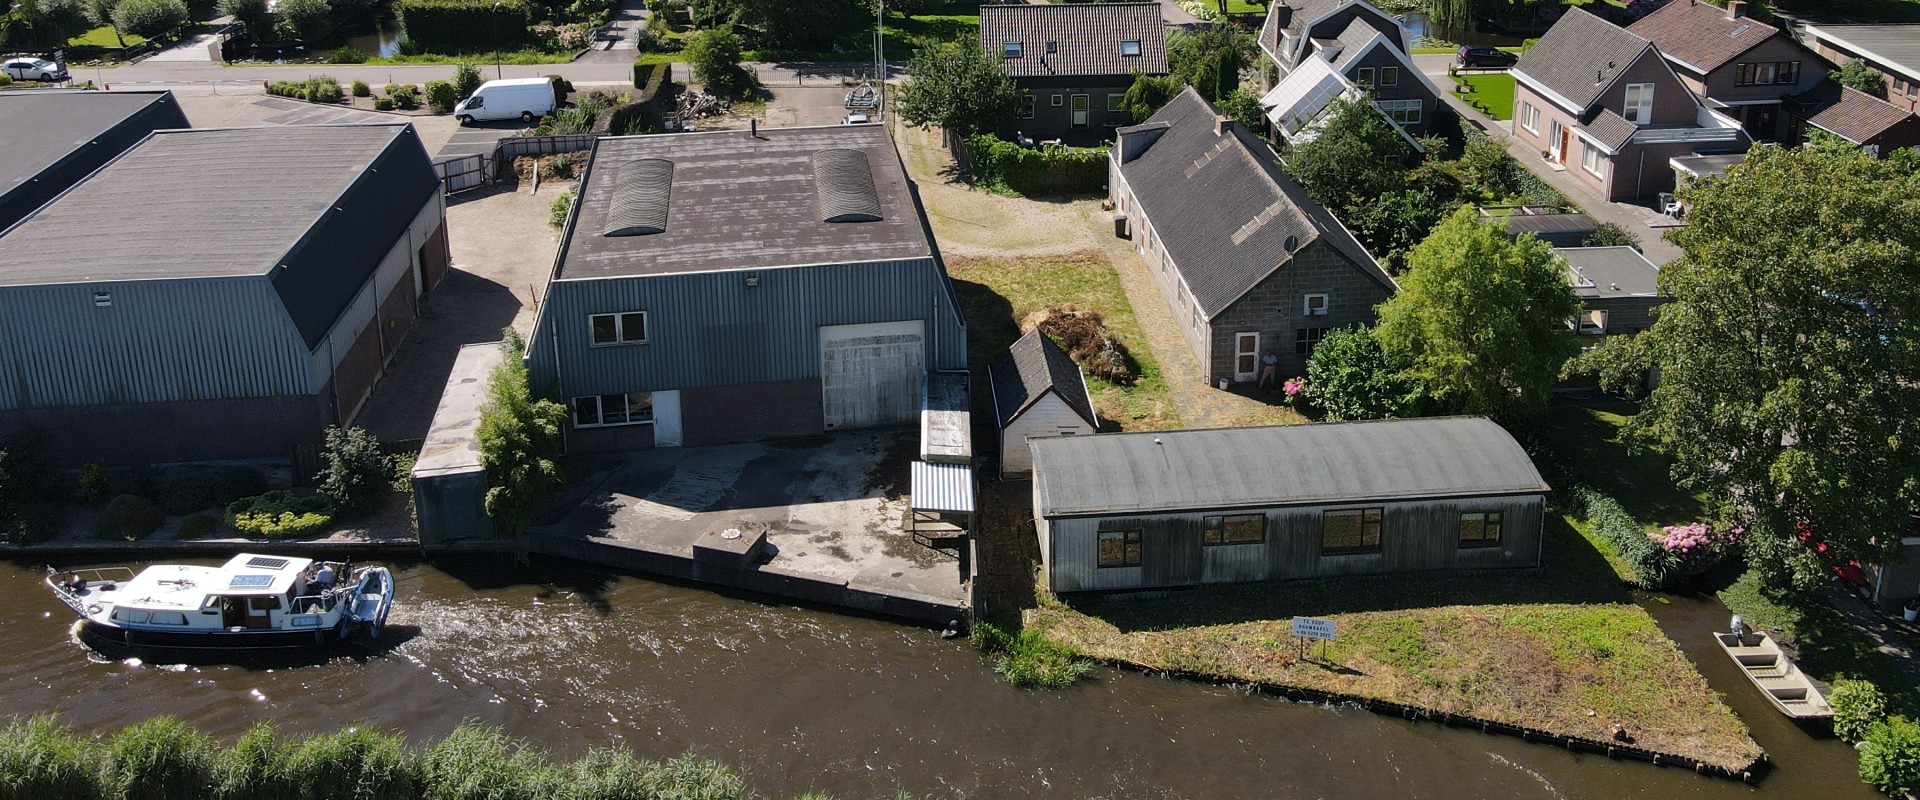 Op zoek naar een vrije bouwkavel aan het water in Nederhorst den Berg?